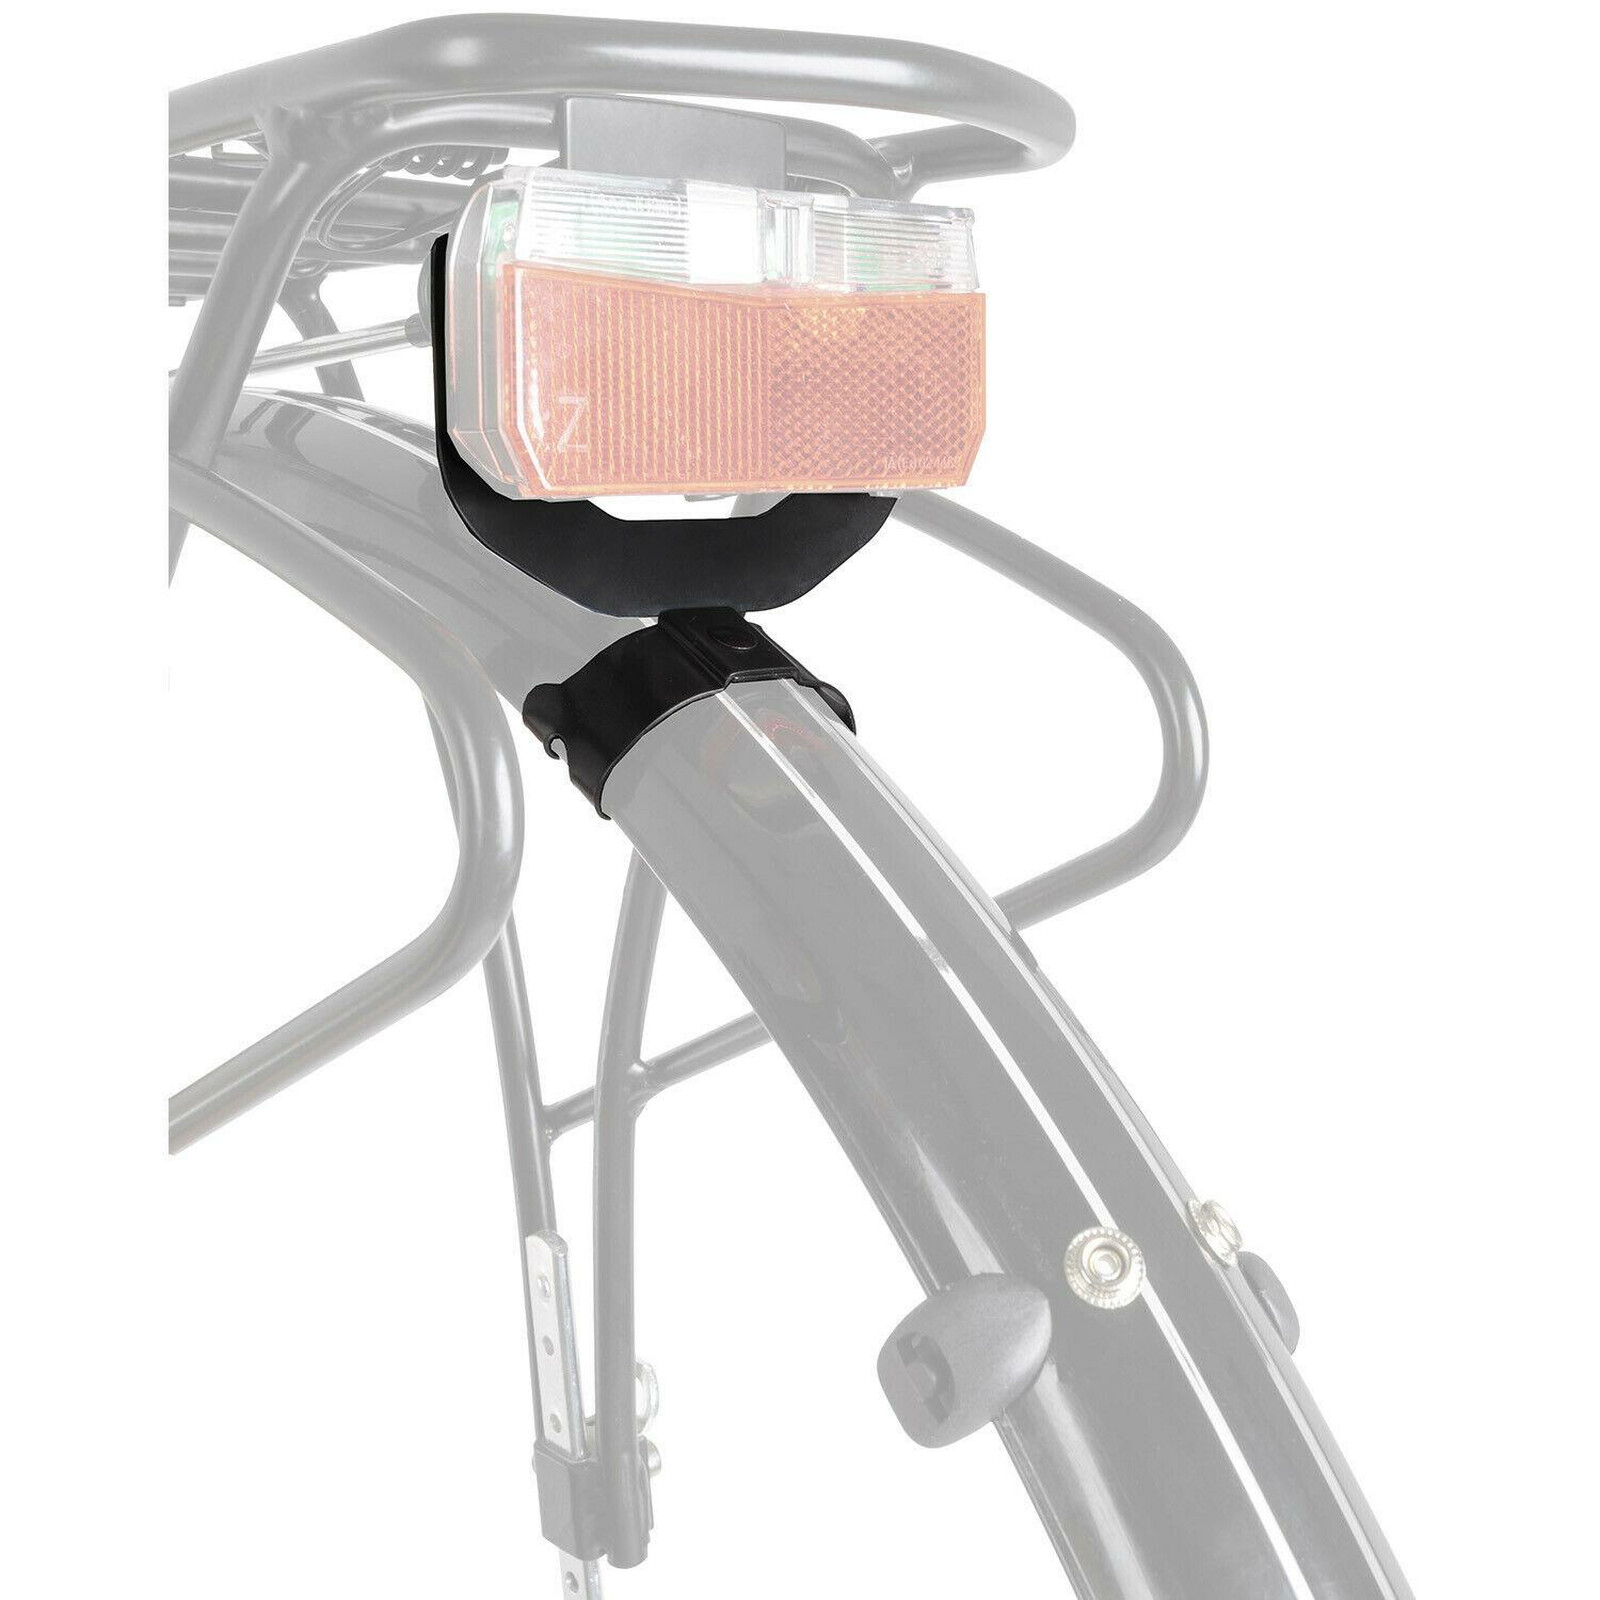 Fahrrad Halterung für Beleuchtung Licht Schutzblech hinten 80mm